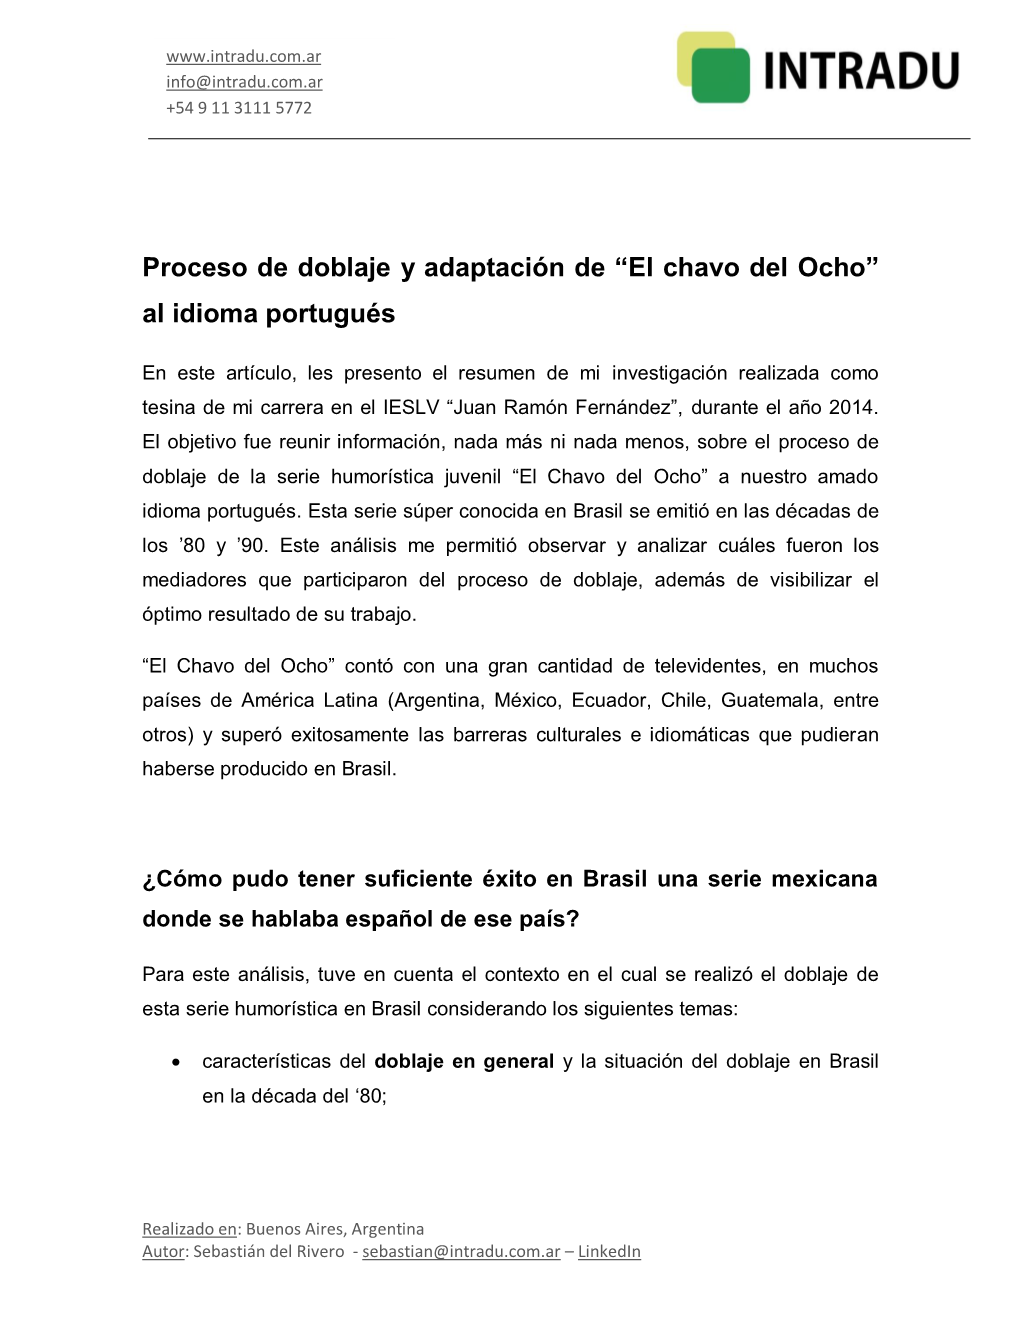 Proceso De Doblaje Y Adaptación De “El Chavo Del Ocho” Al Idioma Portugués